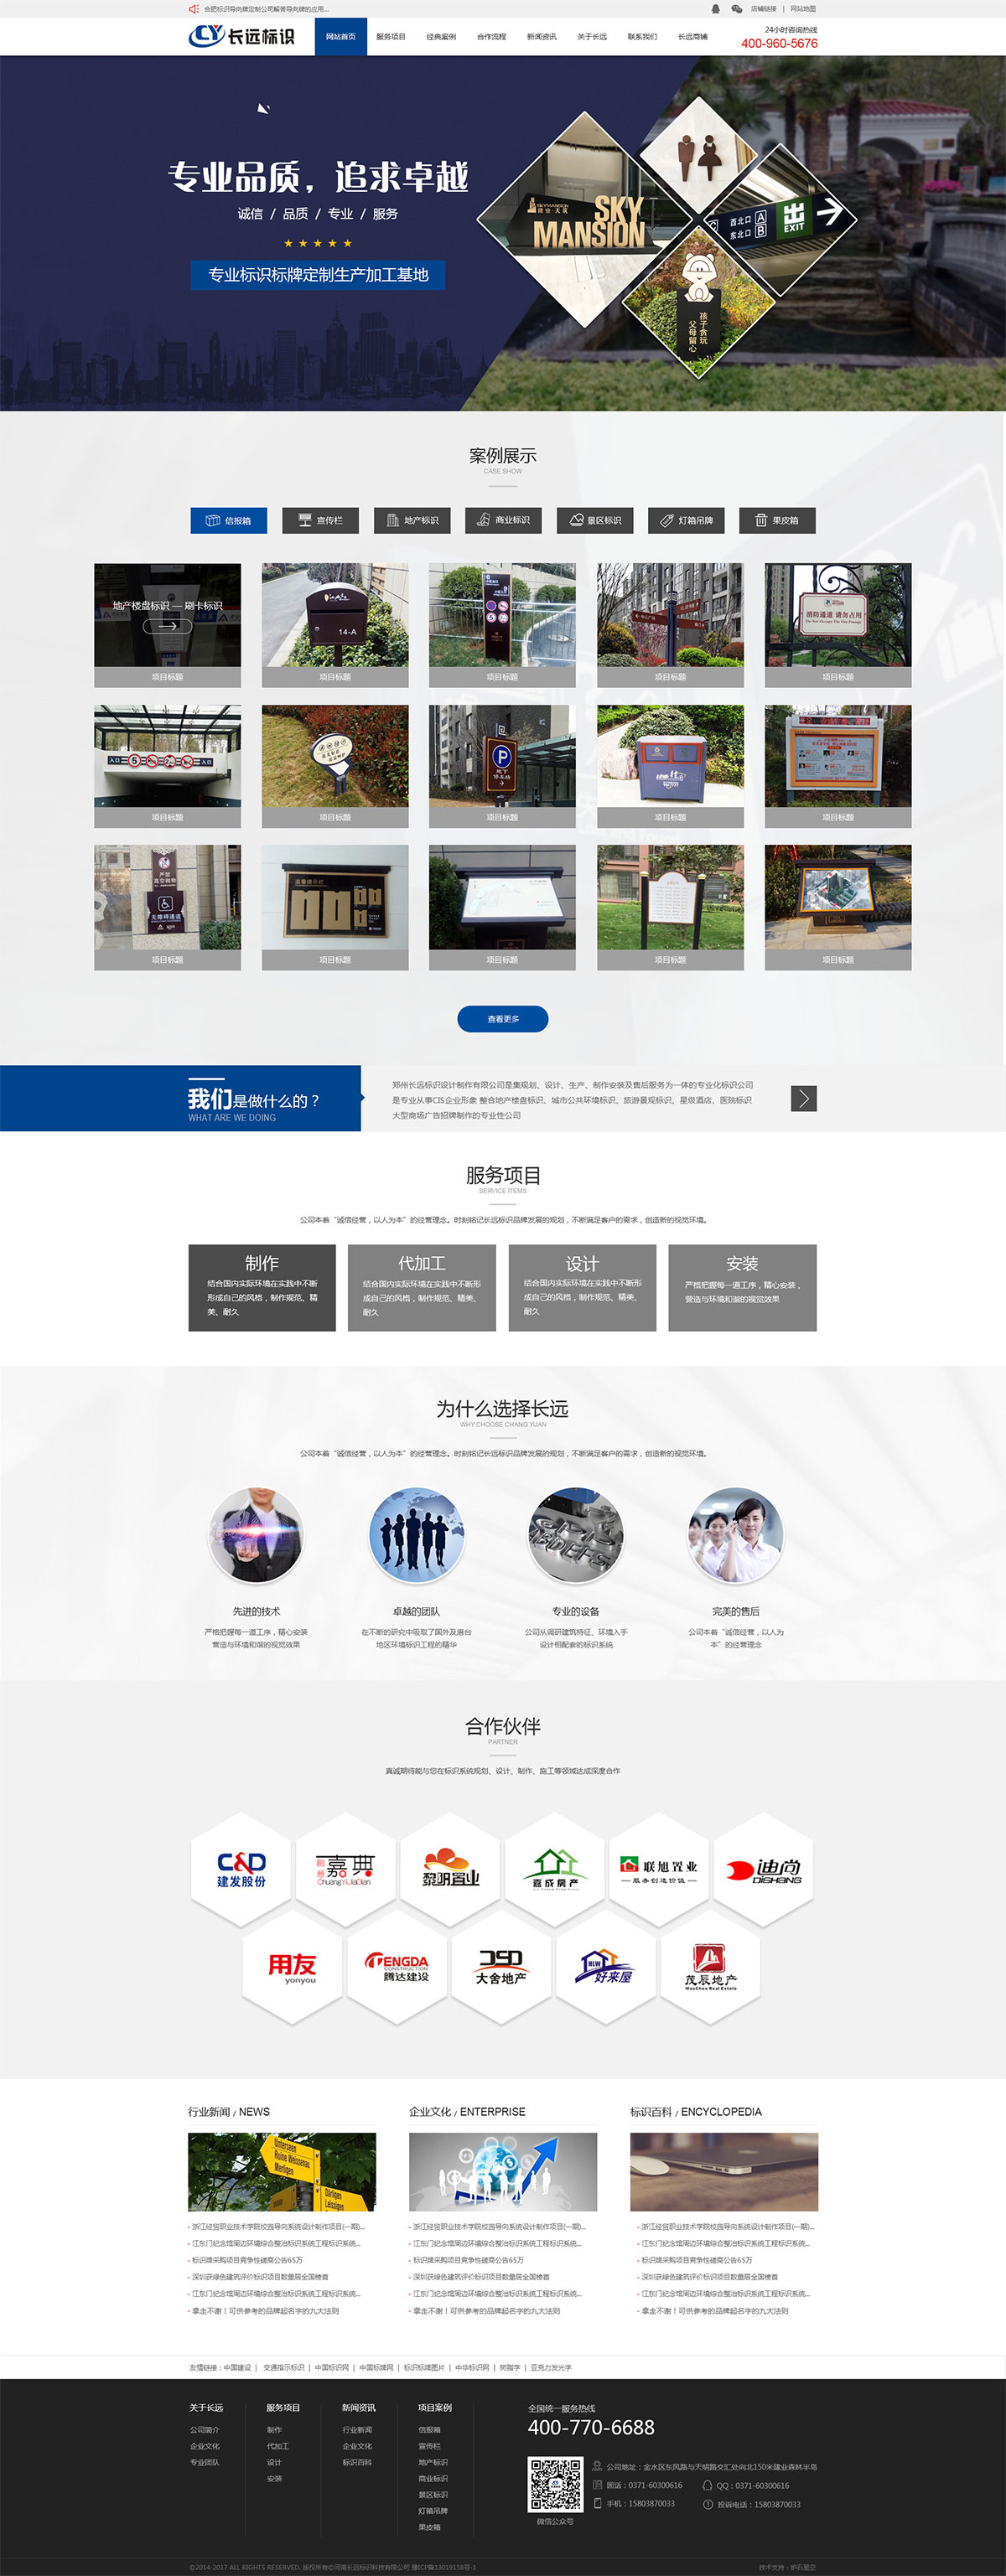 郑州长远标示官网网站设计制作